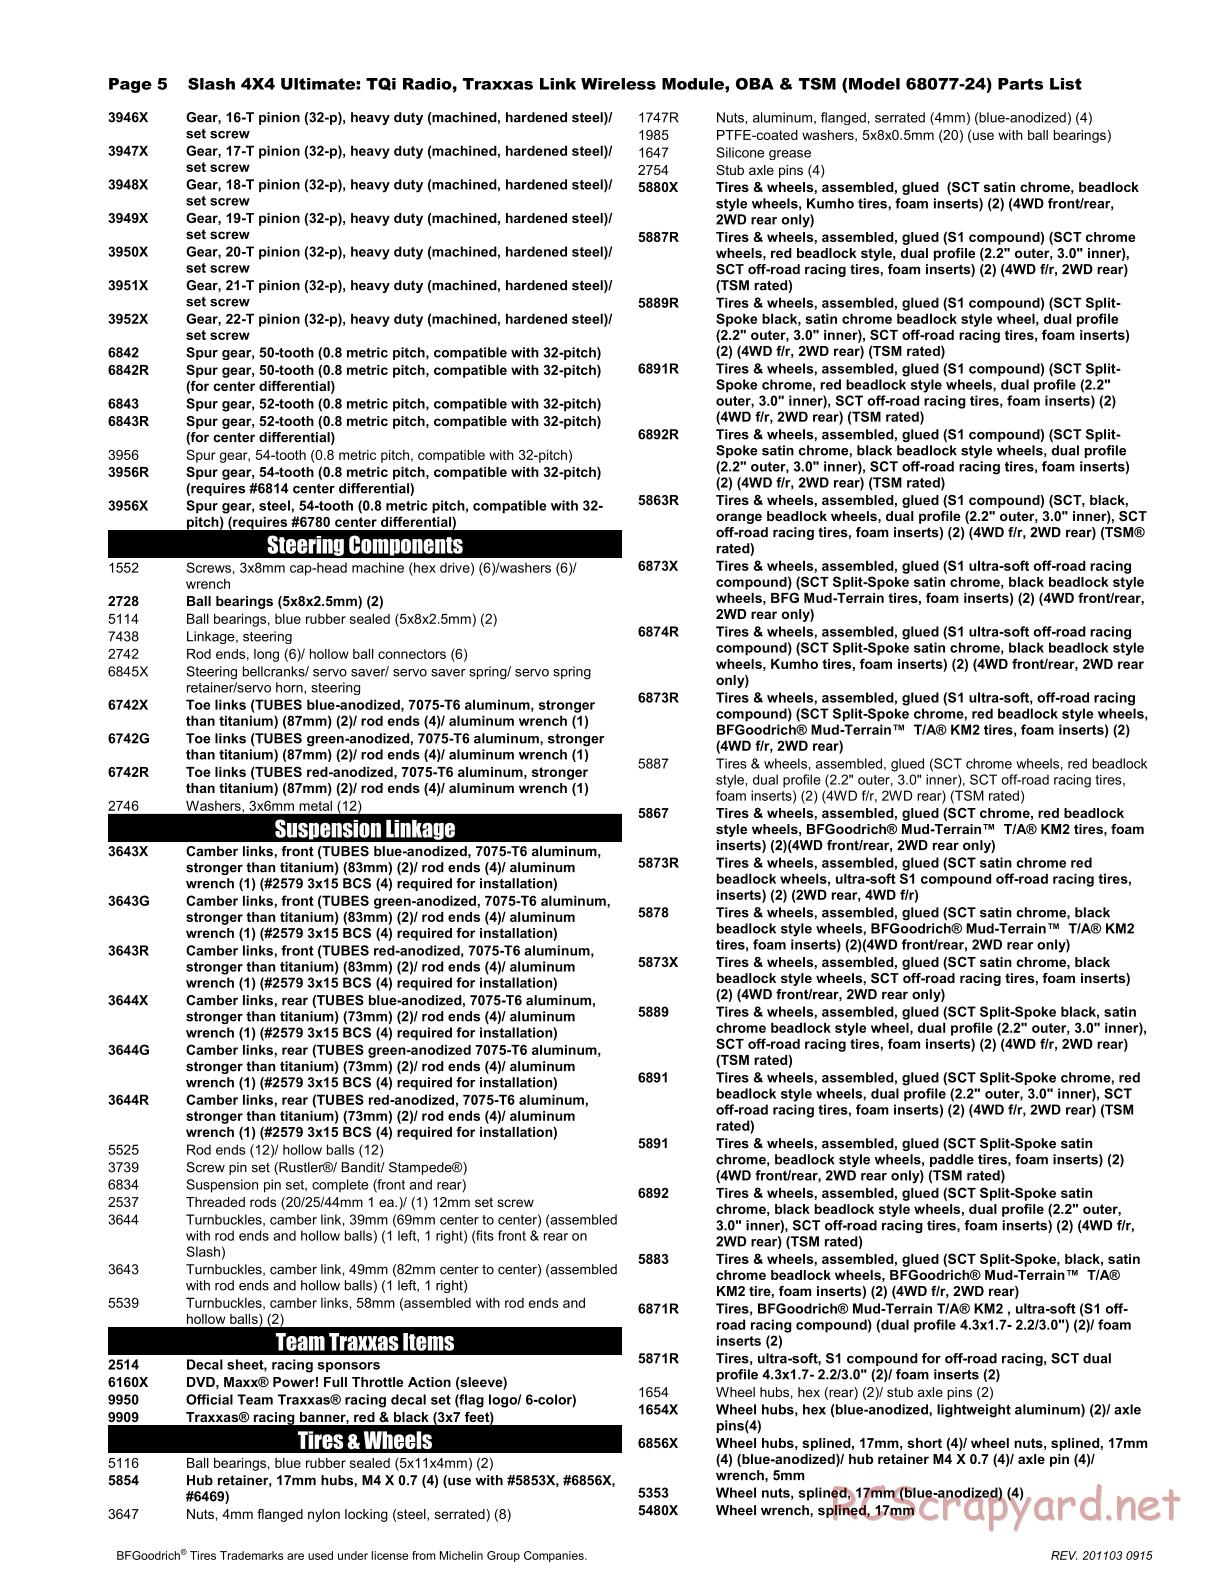 Traxxas - Slash 4x4 Ultimate TSM OBA (2017) - Parts List - Page 5